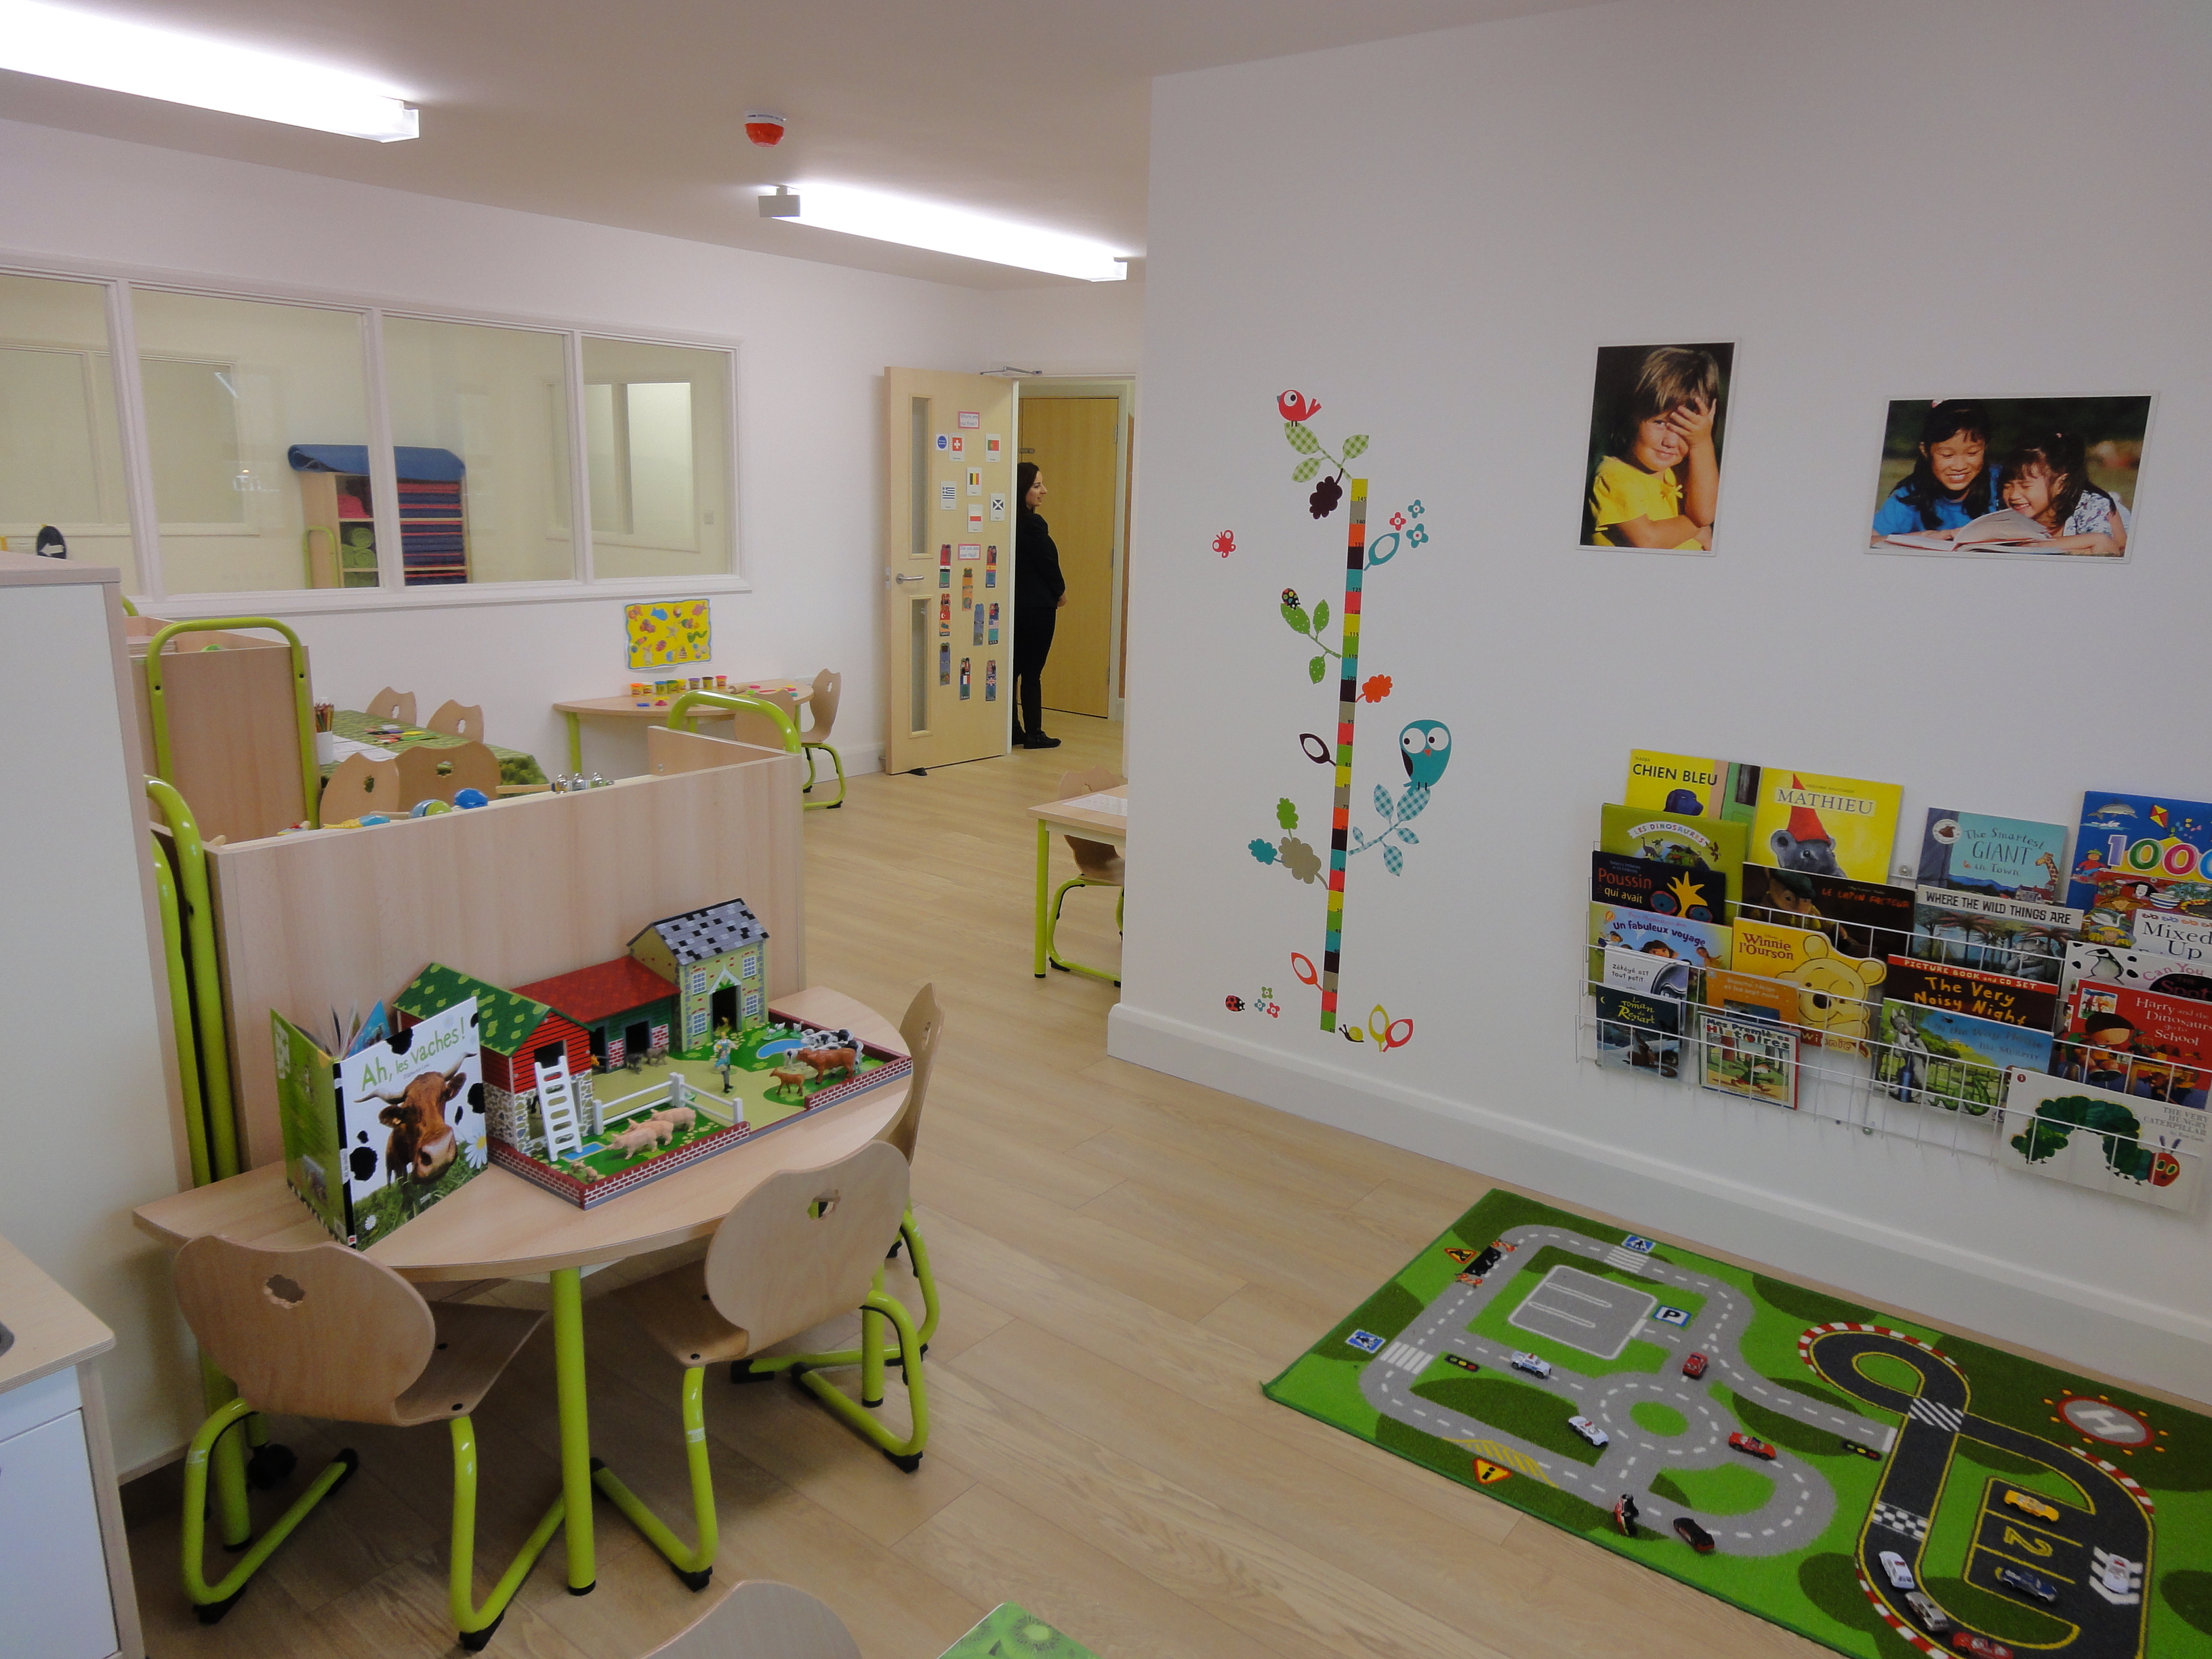 A children's classroom  at la chouette school of london 